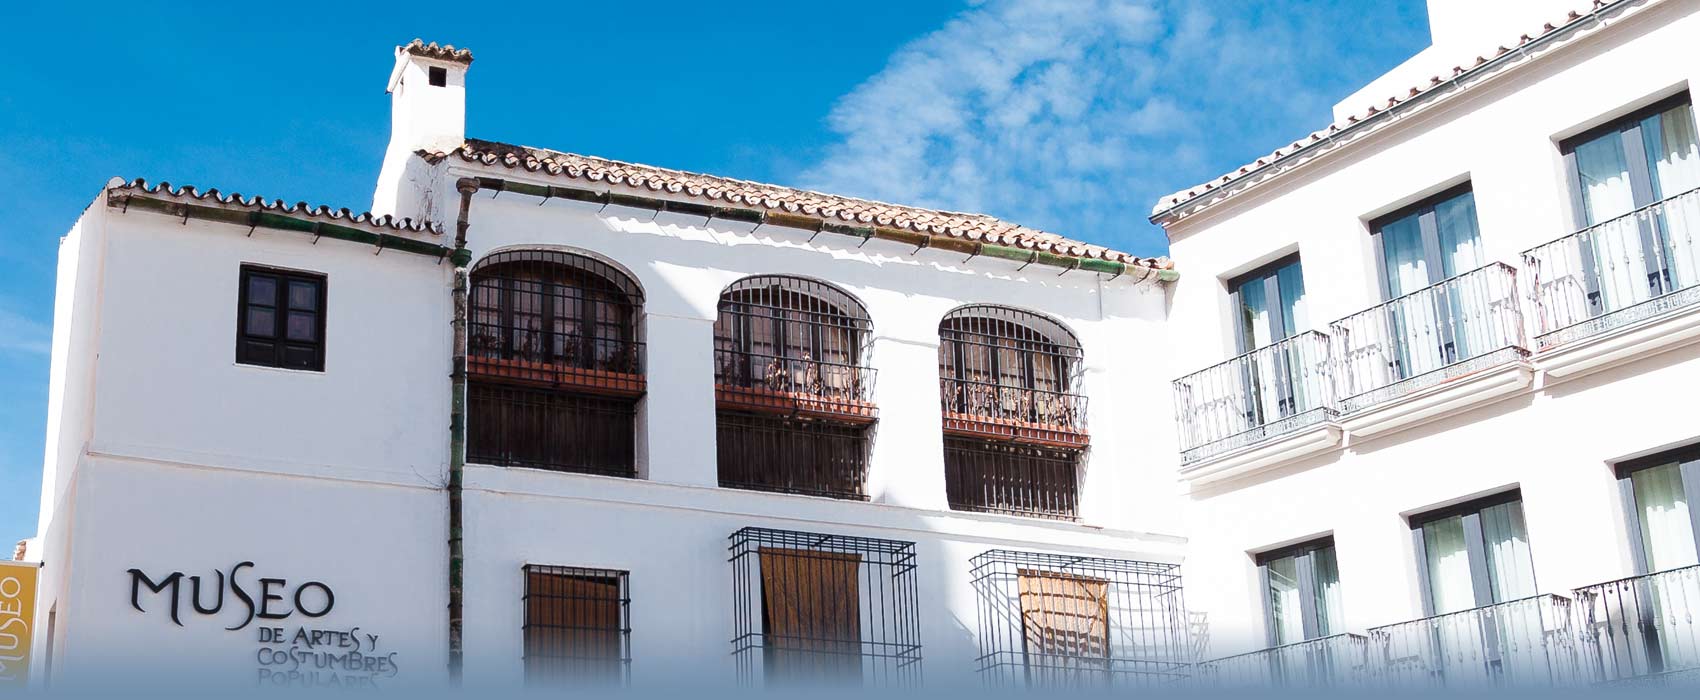 Das Heimatmuseum von Malaga